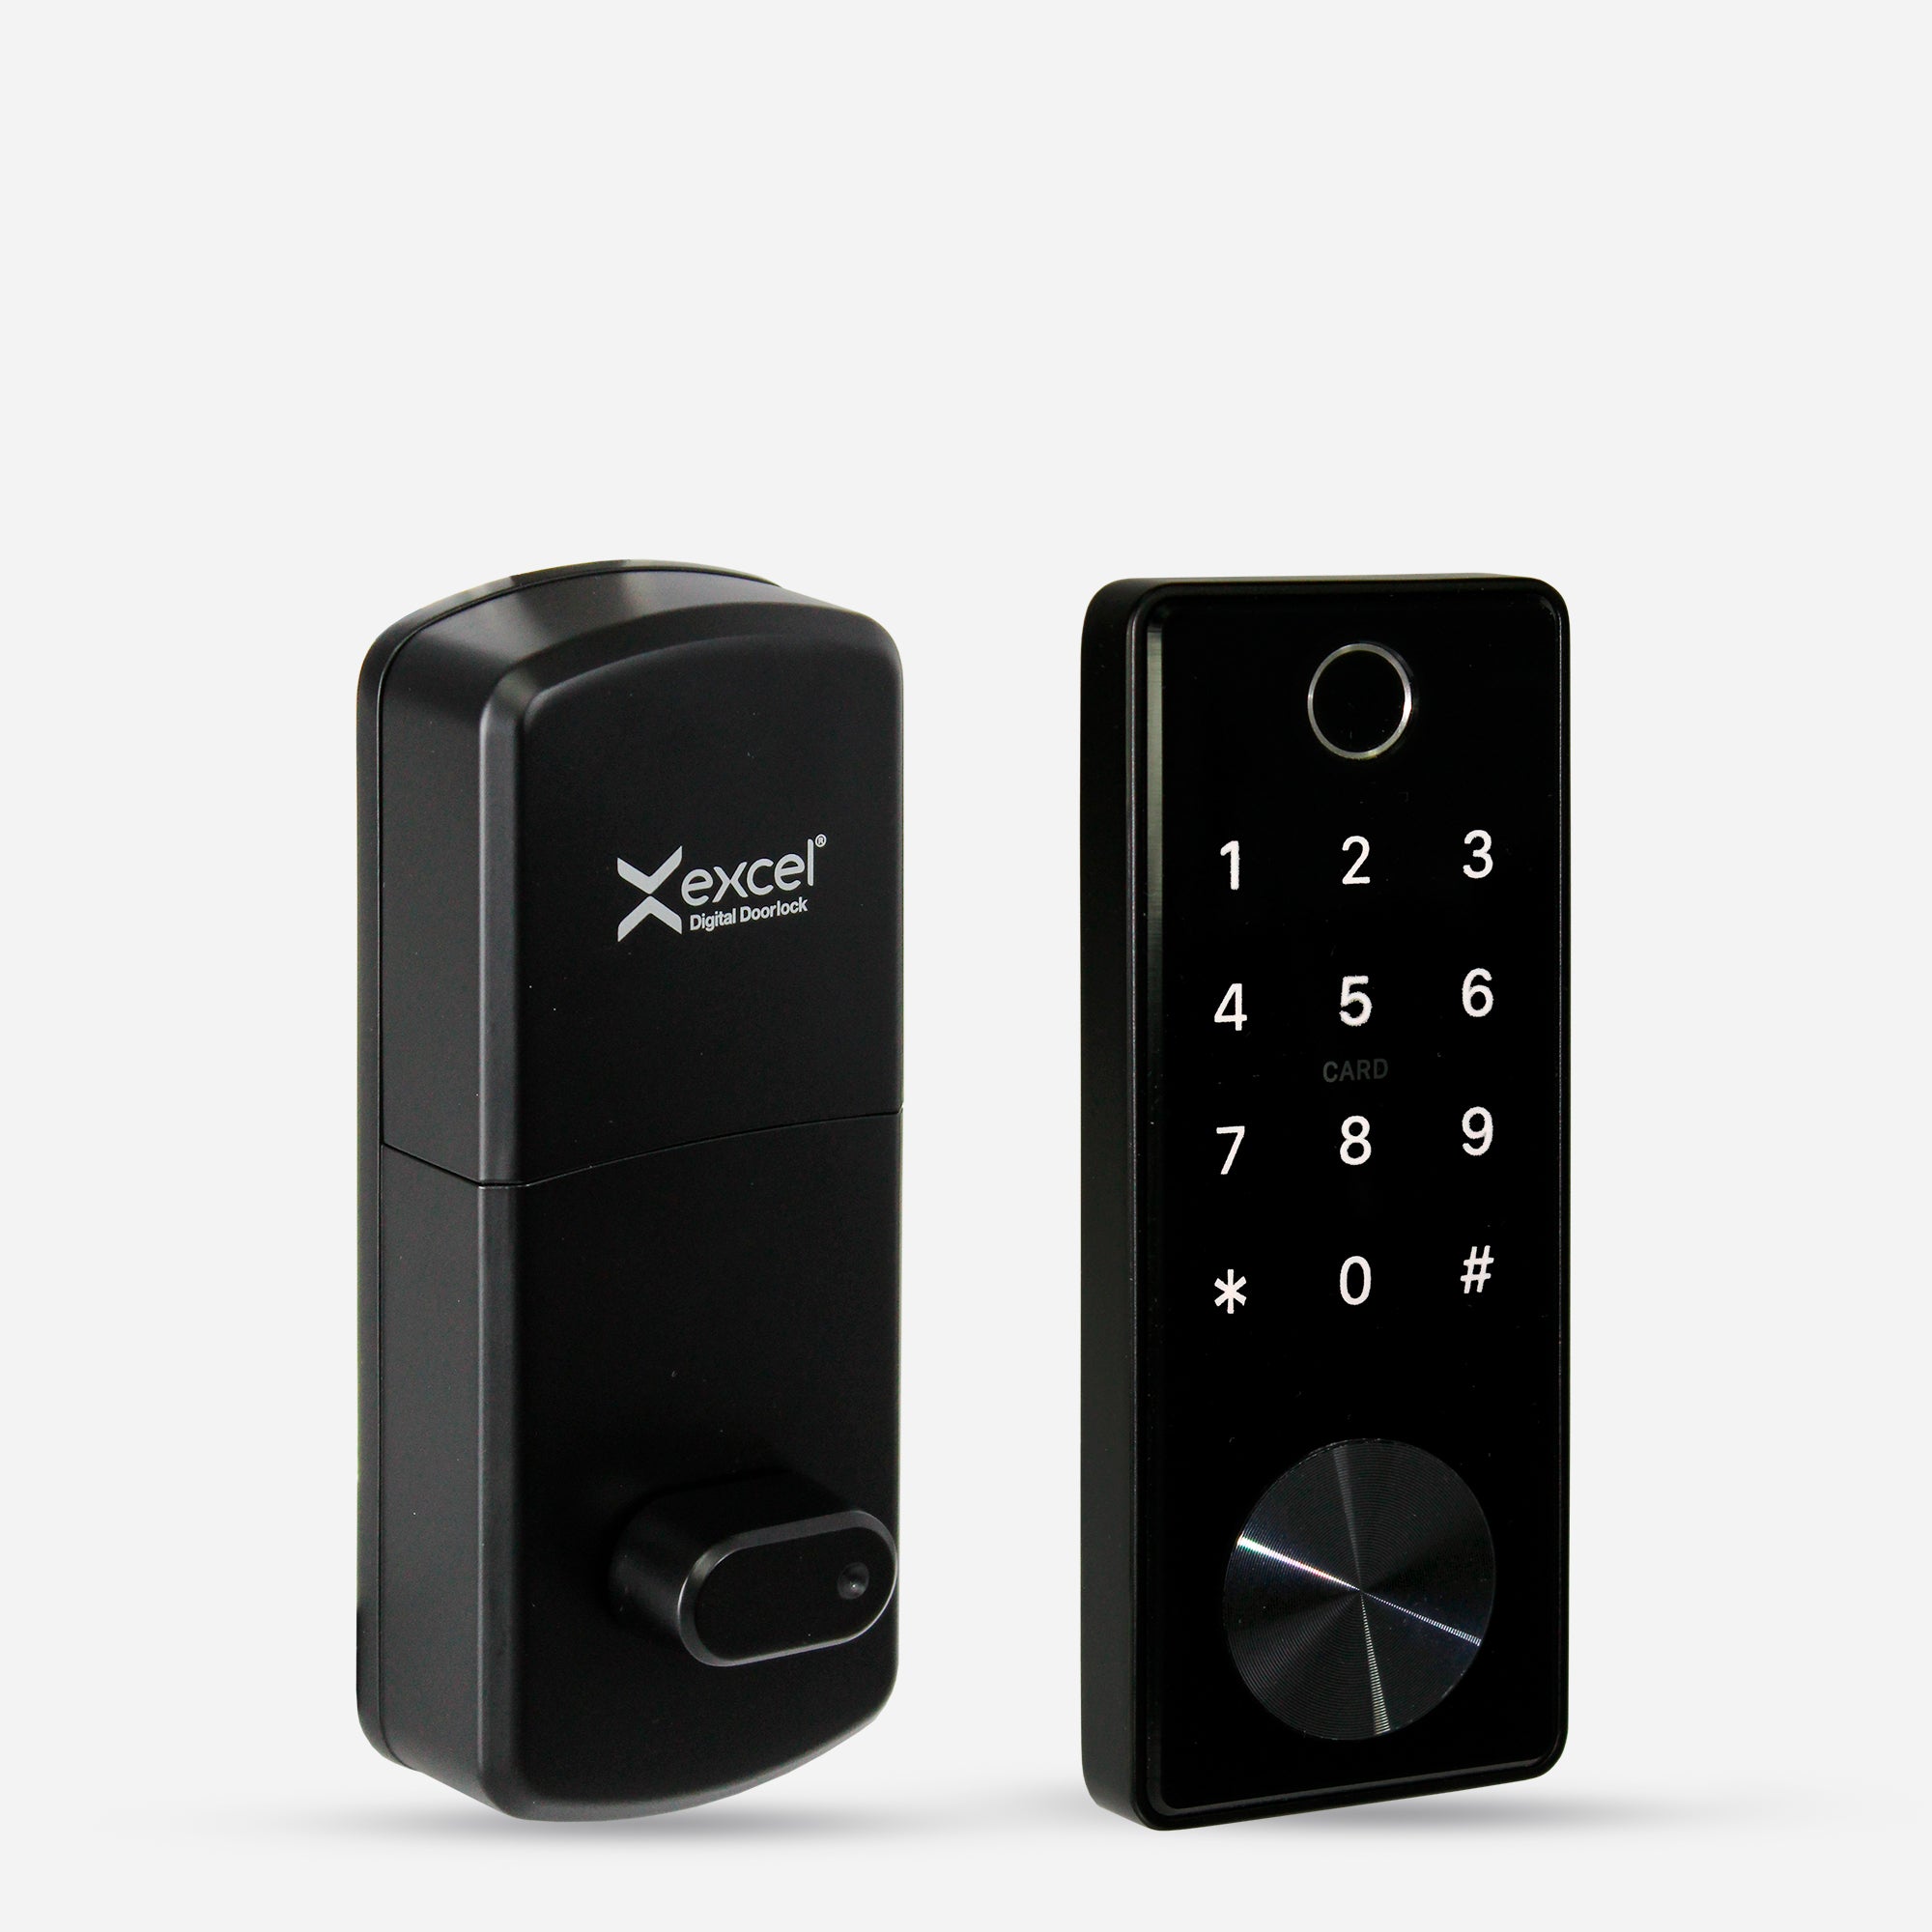 Cerradura Digital EXC-325 tipo cerrojo con WiFi, Bluetooth, Huella Digital, Contraseña Numérica, Tarjeta RFID y Llave Mecánica. Módulo externo e interno.